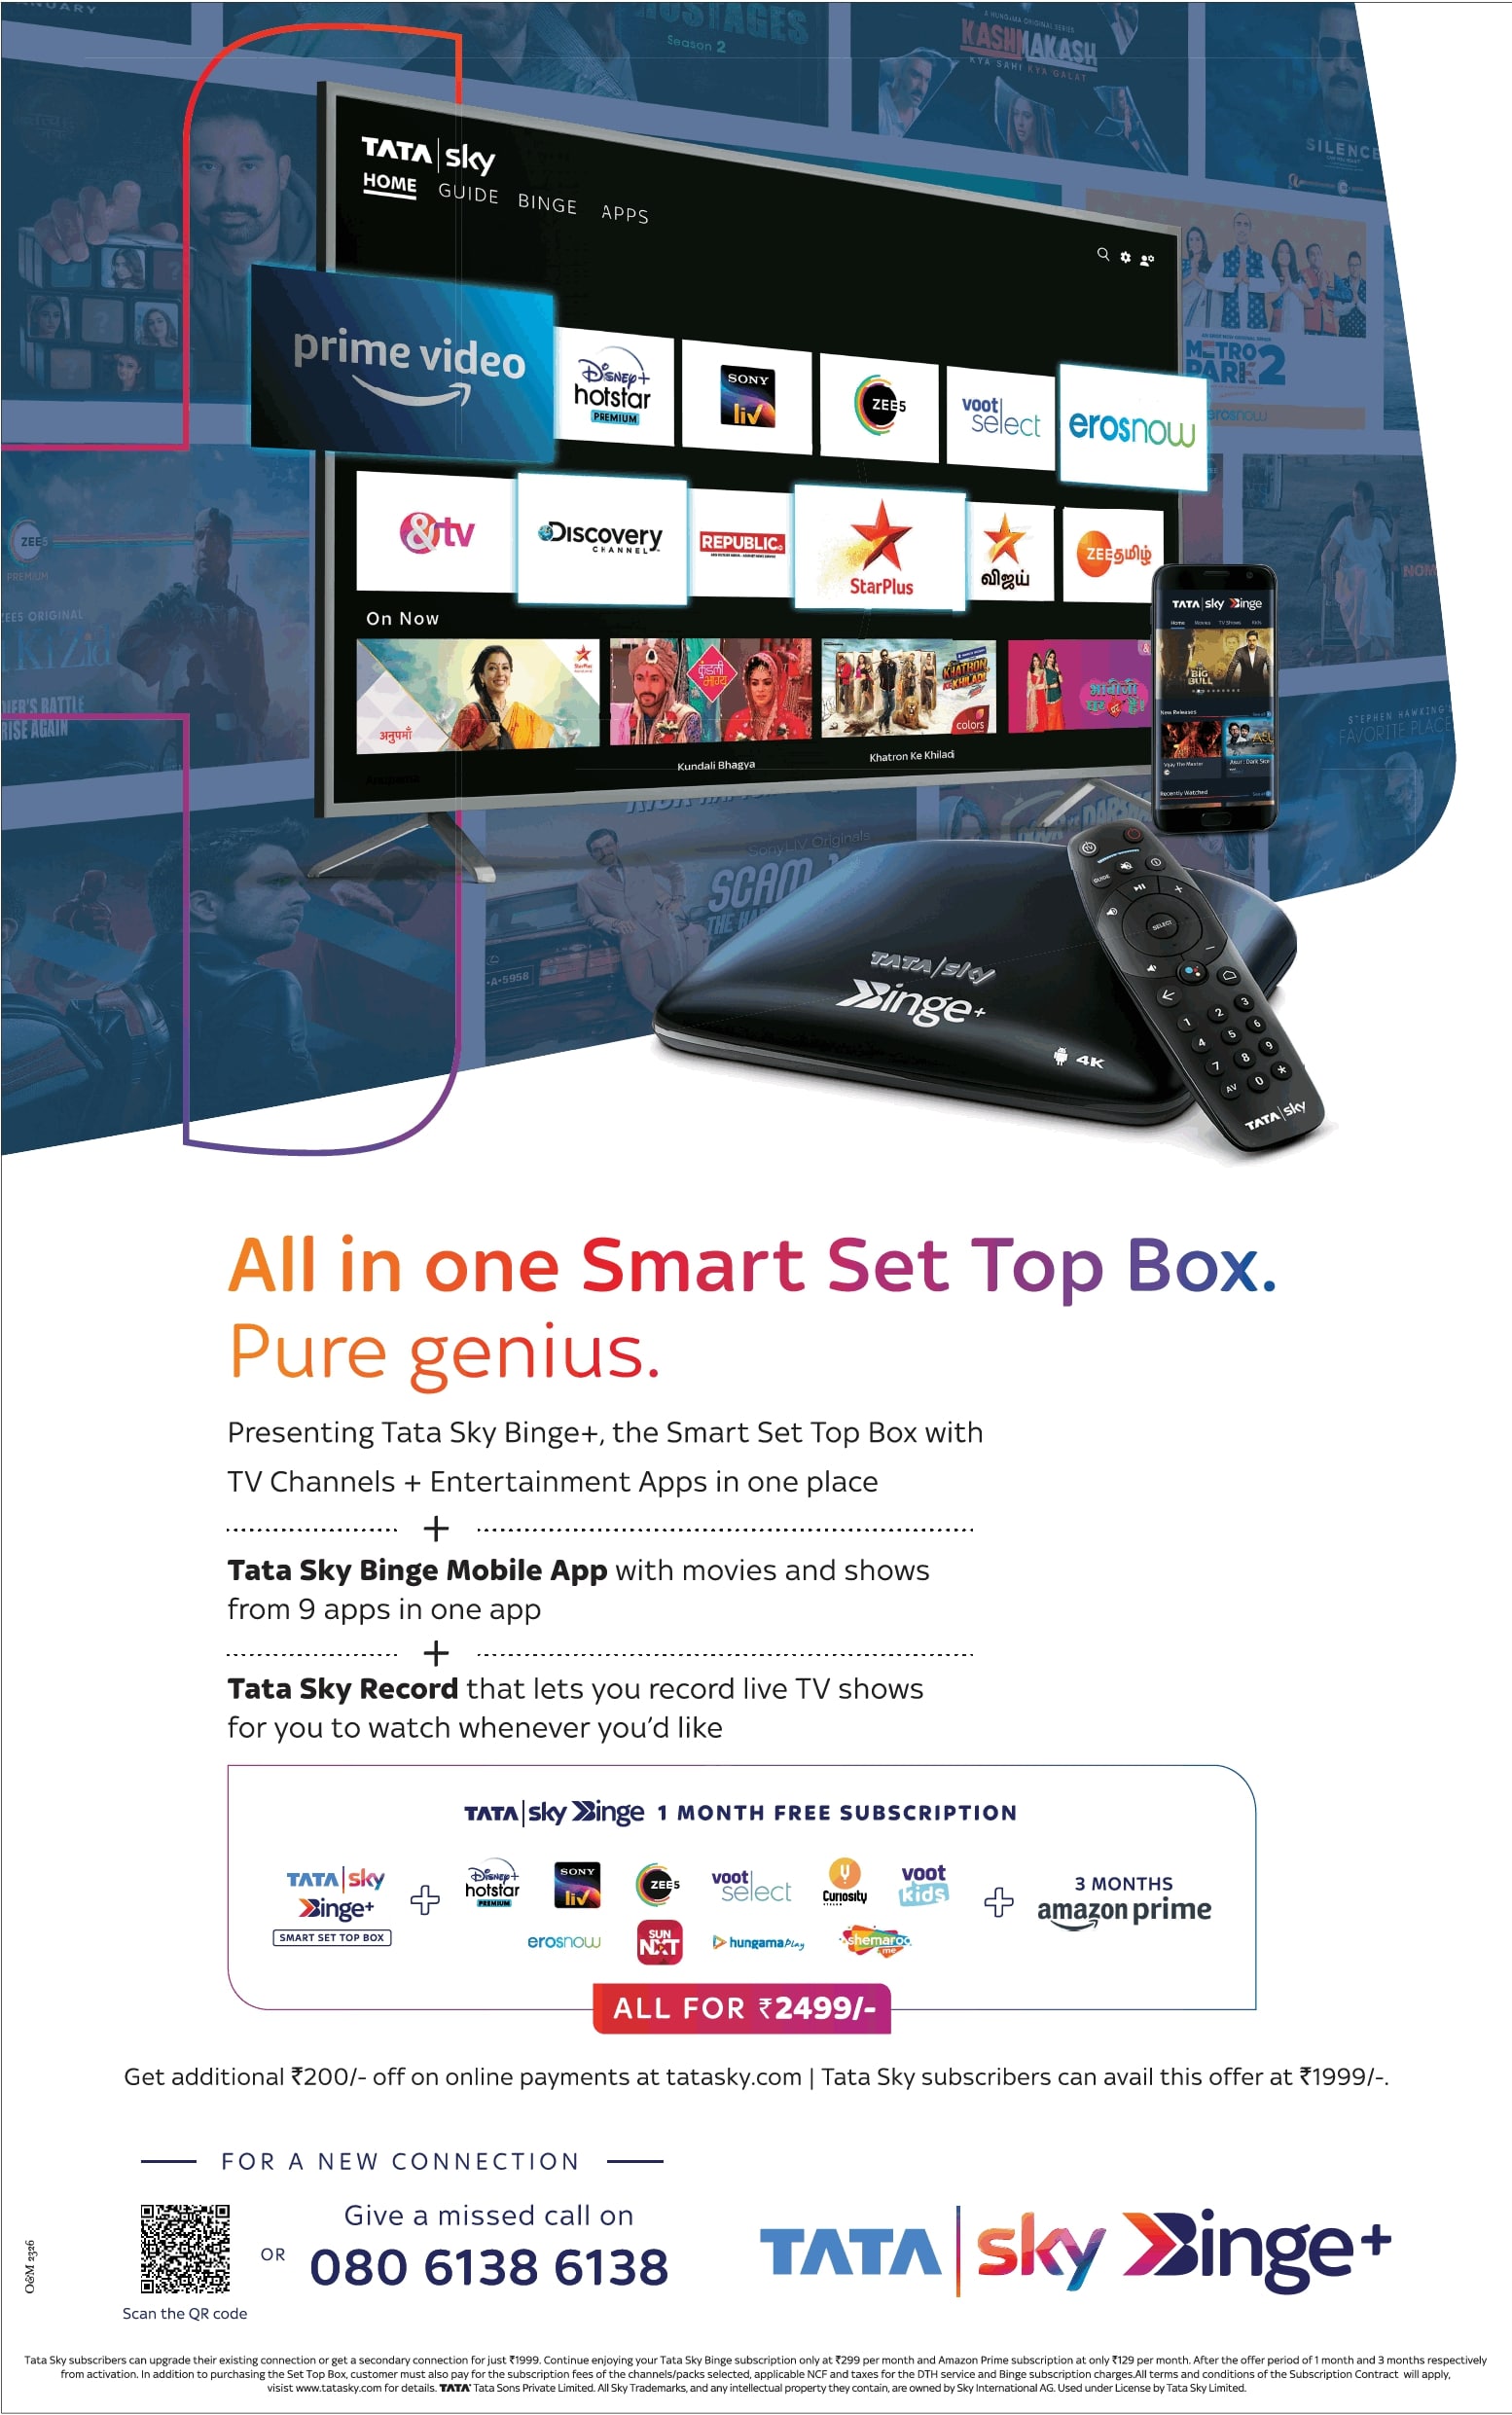 tata-sky-binge-plus-all-in-one-smart-set-top-box-pure-genius-ad-delhi-times-05-06-2021